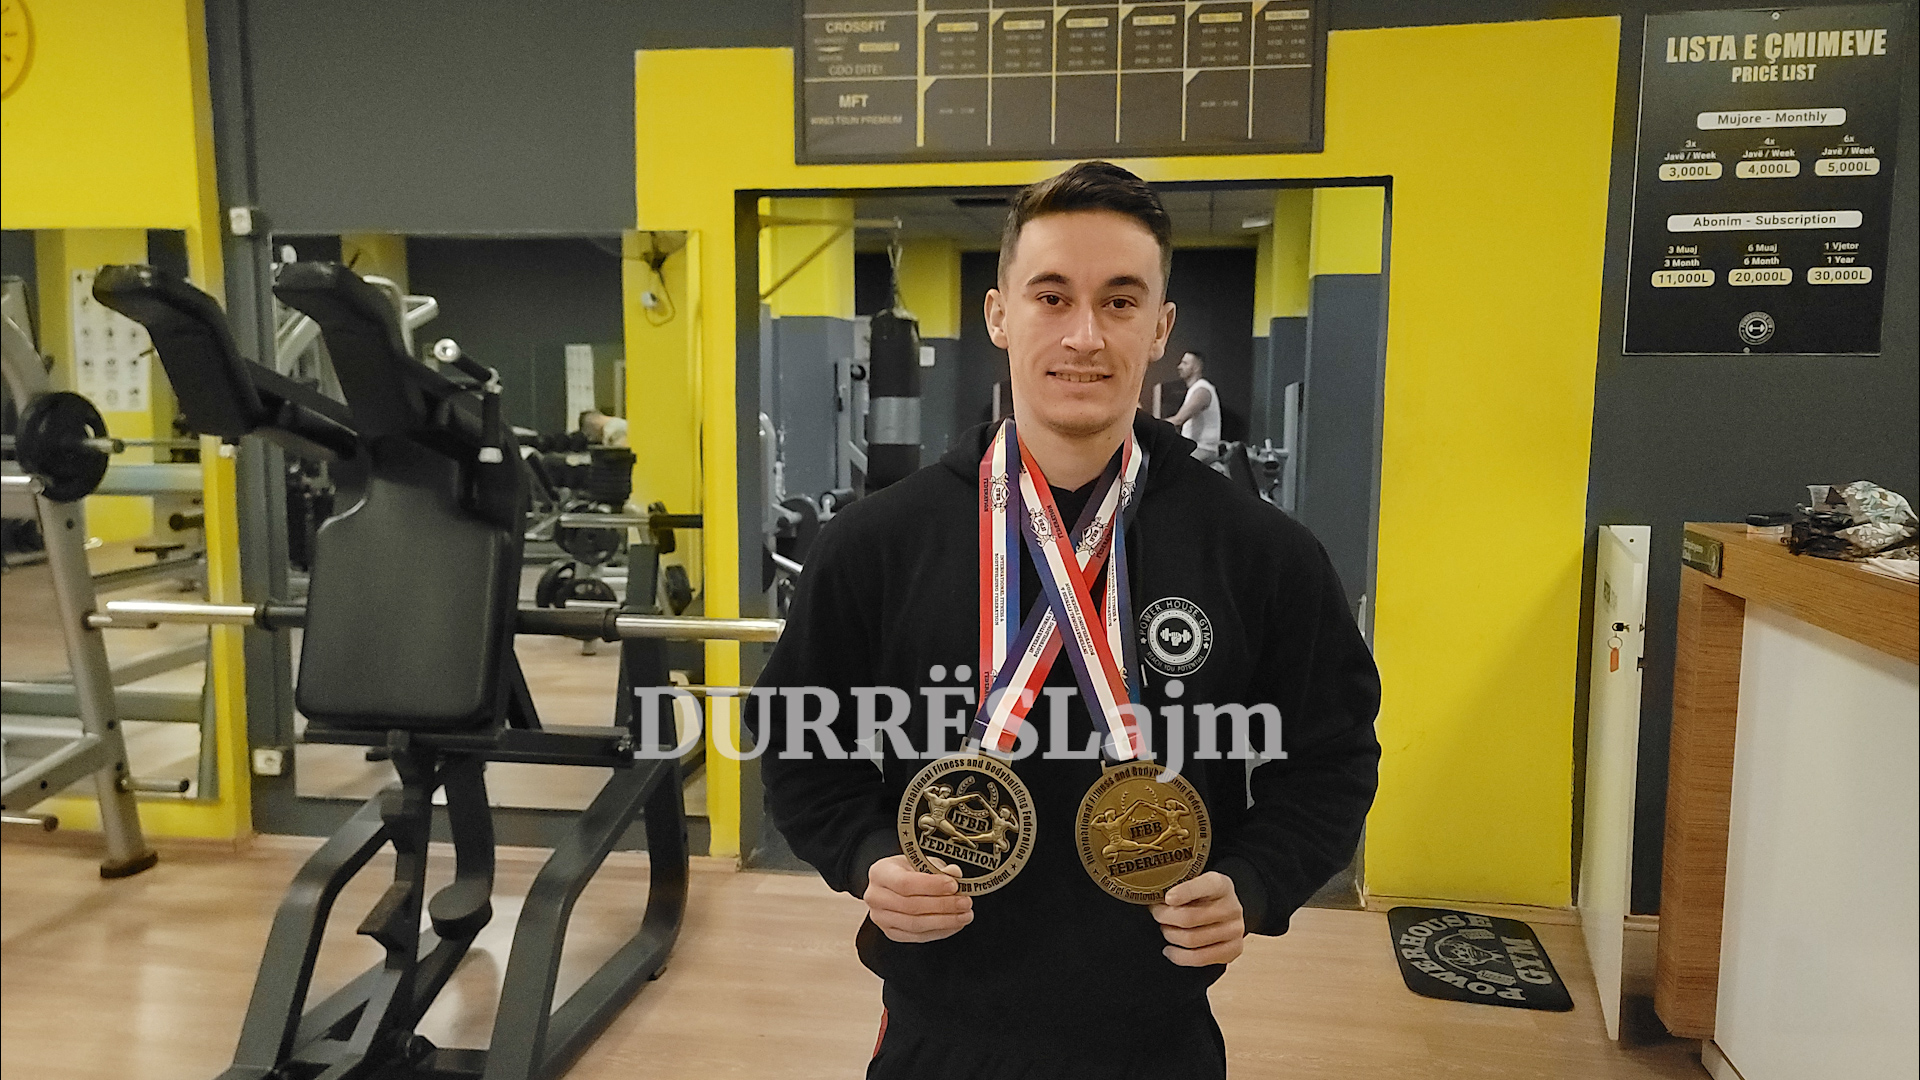 Nga nënpeshë, në kampion bote në bodybuilding. Kjo është historia e 19-vjeçarit nga Durrësi, Marjan Hoxhaj (VIDEO)